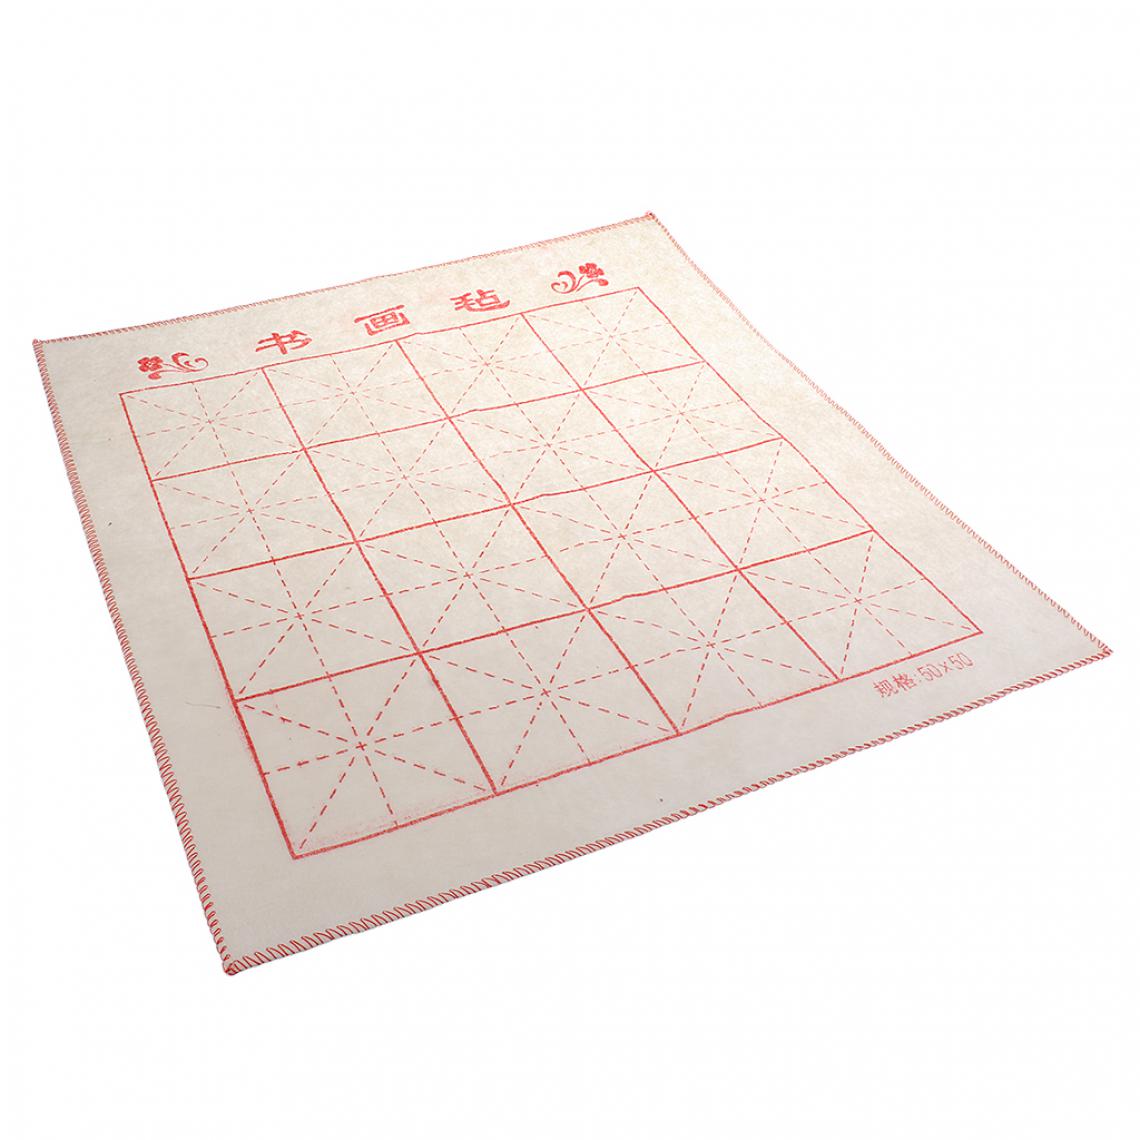 marque generique - 60 Feuilles Papiers de Riz Chinois Ecriture Fluide avec Treillis pour s’Exercer à la Calligraphie Chinoise 50 x 50cm - Objets déco